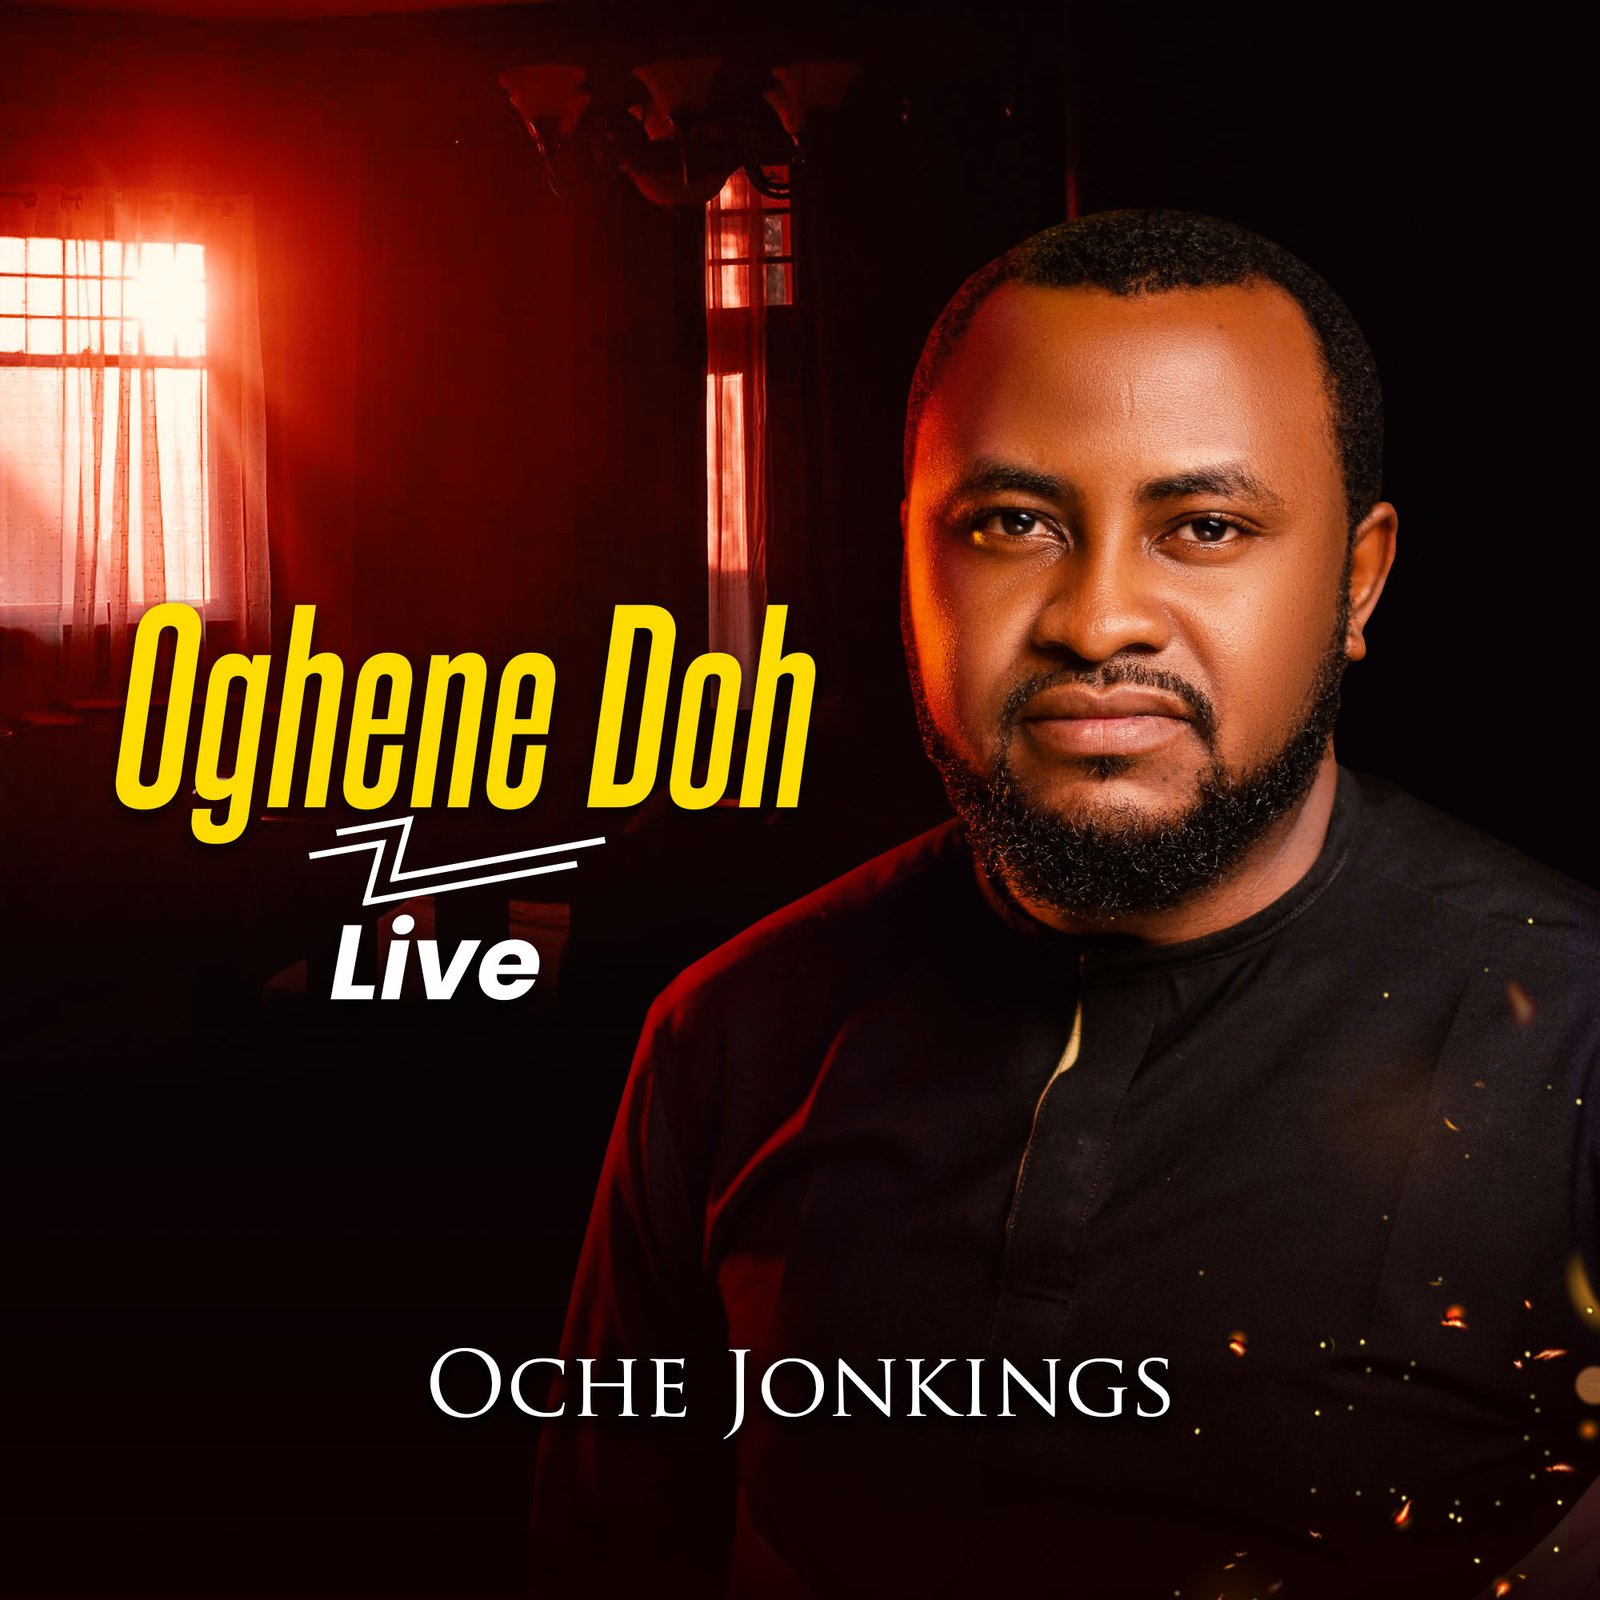 Oche Jonkings Oghene Doh Live 1